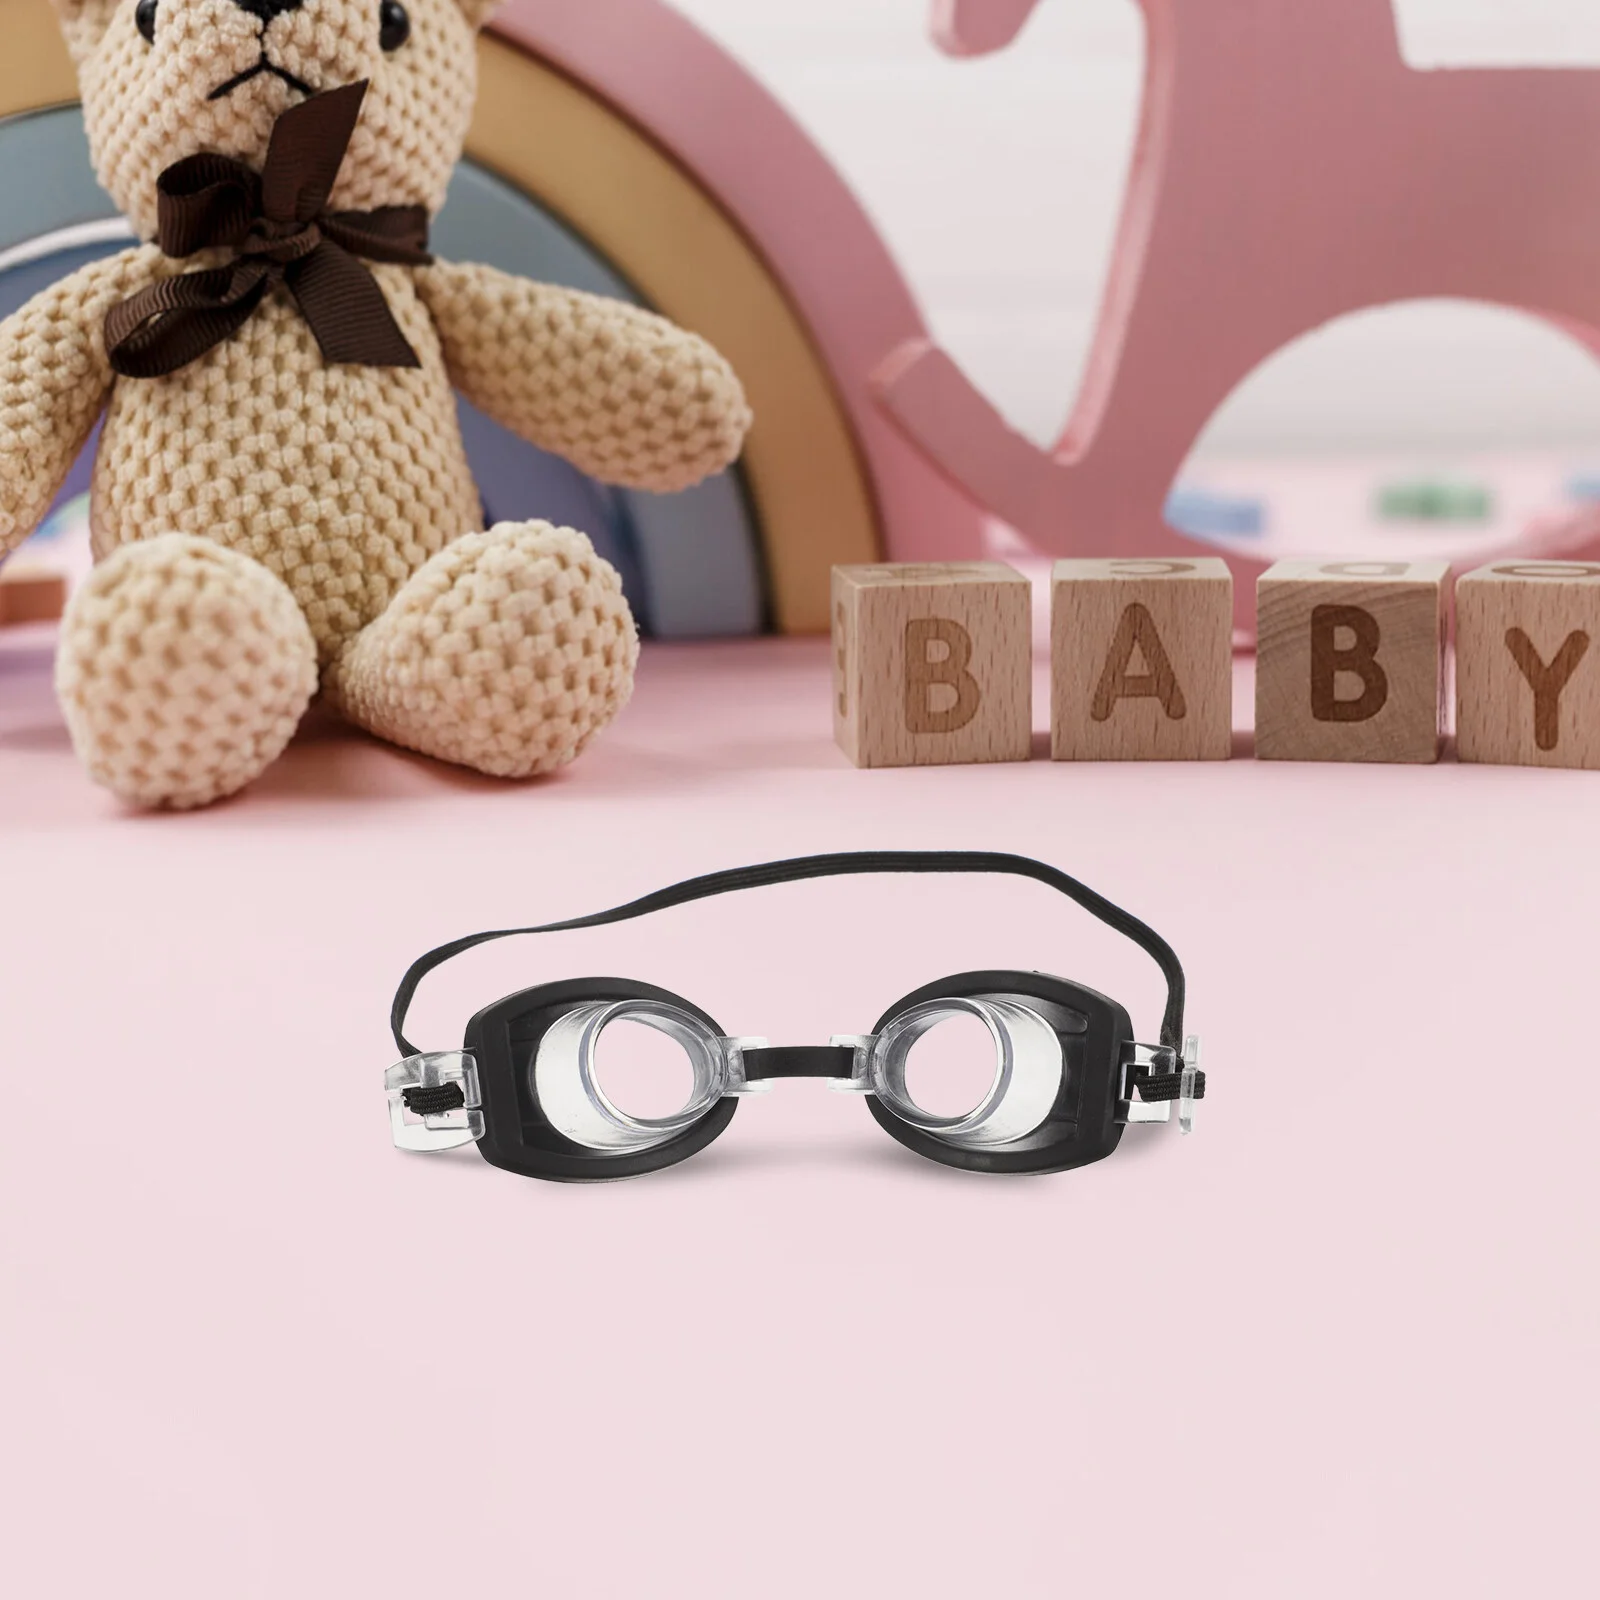 

Кукольные плавательные очки для кукольного домика очки платье аксессуары для миниатюрных вещей реквизит для кукол